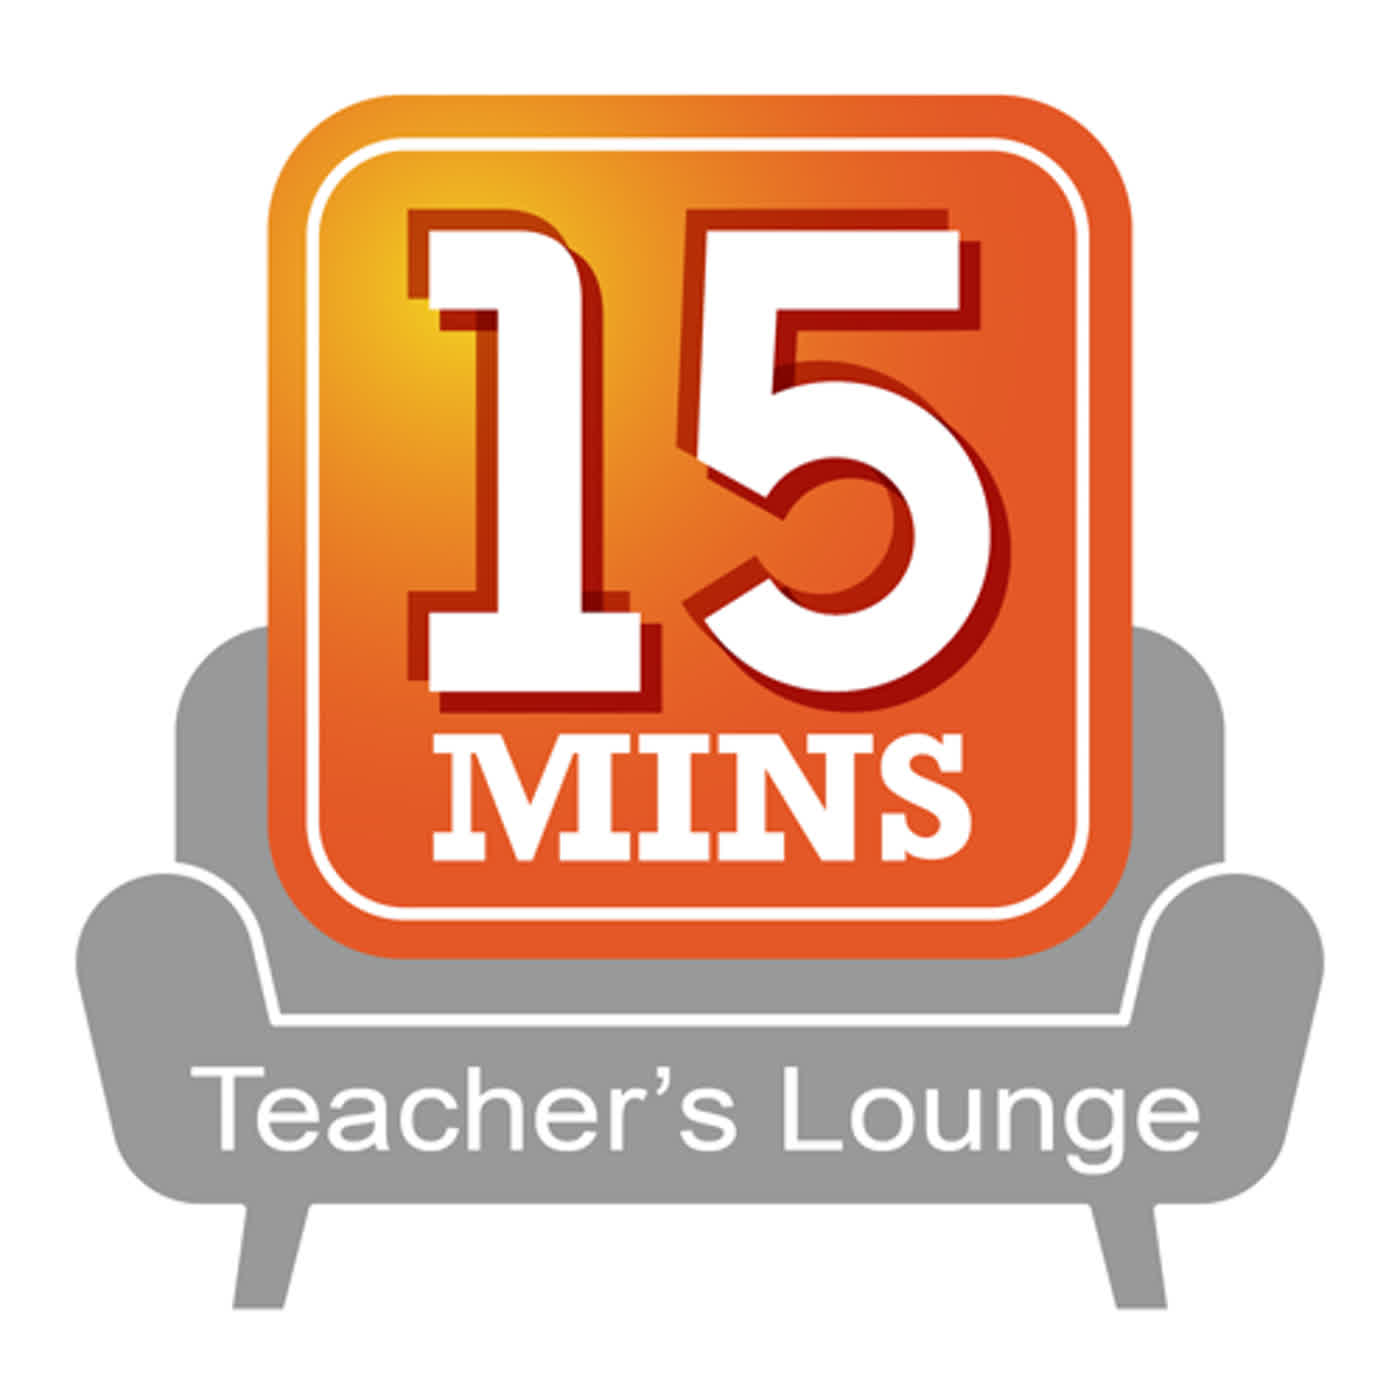 幕後教師室Teacher's Lounge Ep.29: 社會人的進階時間管理 ft. Patrick - Don't manage your time, manage your energy